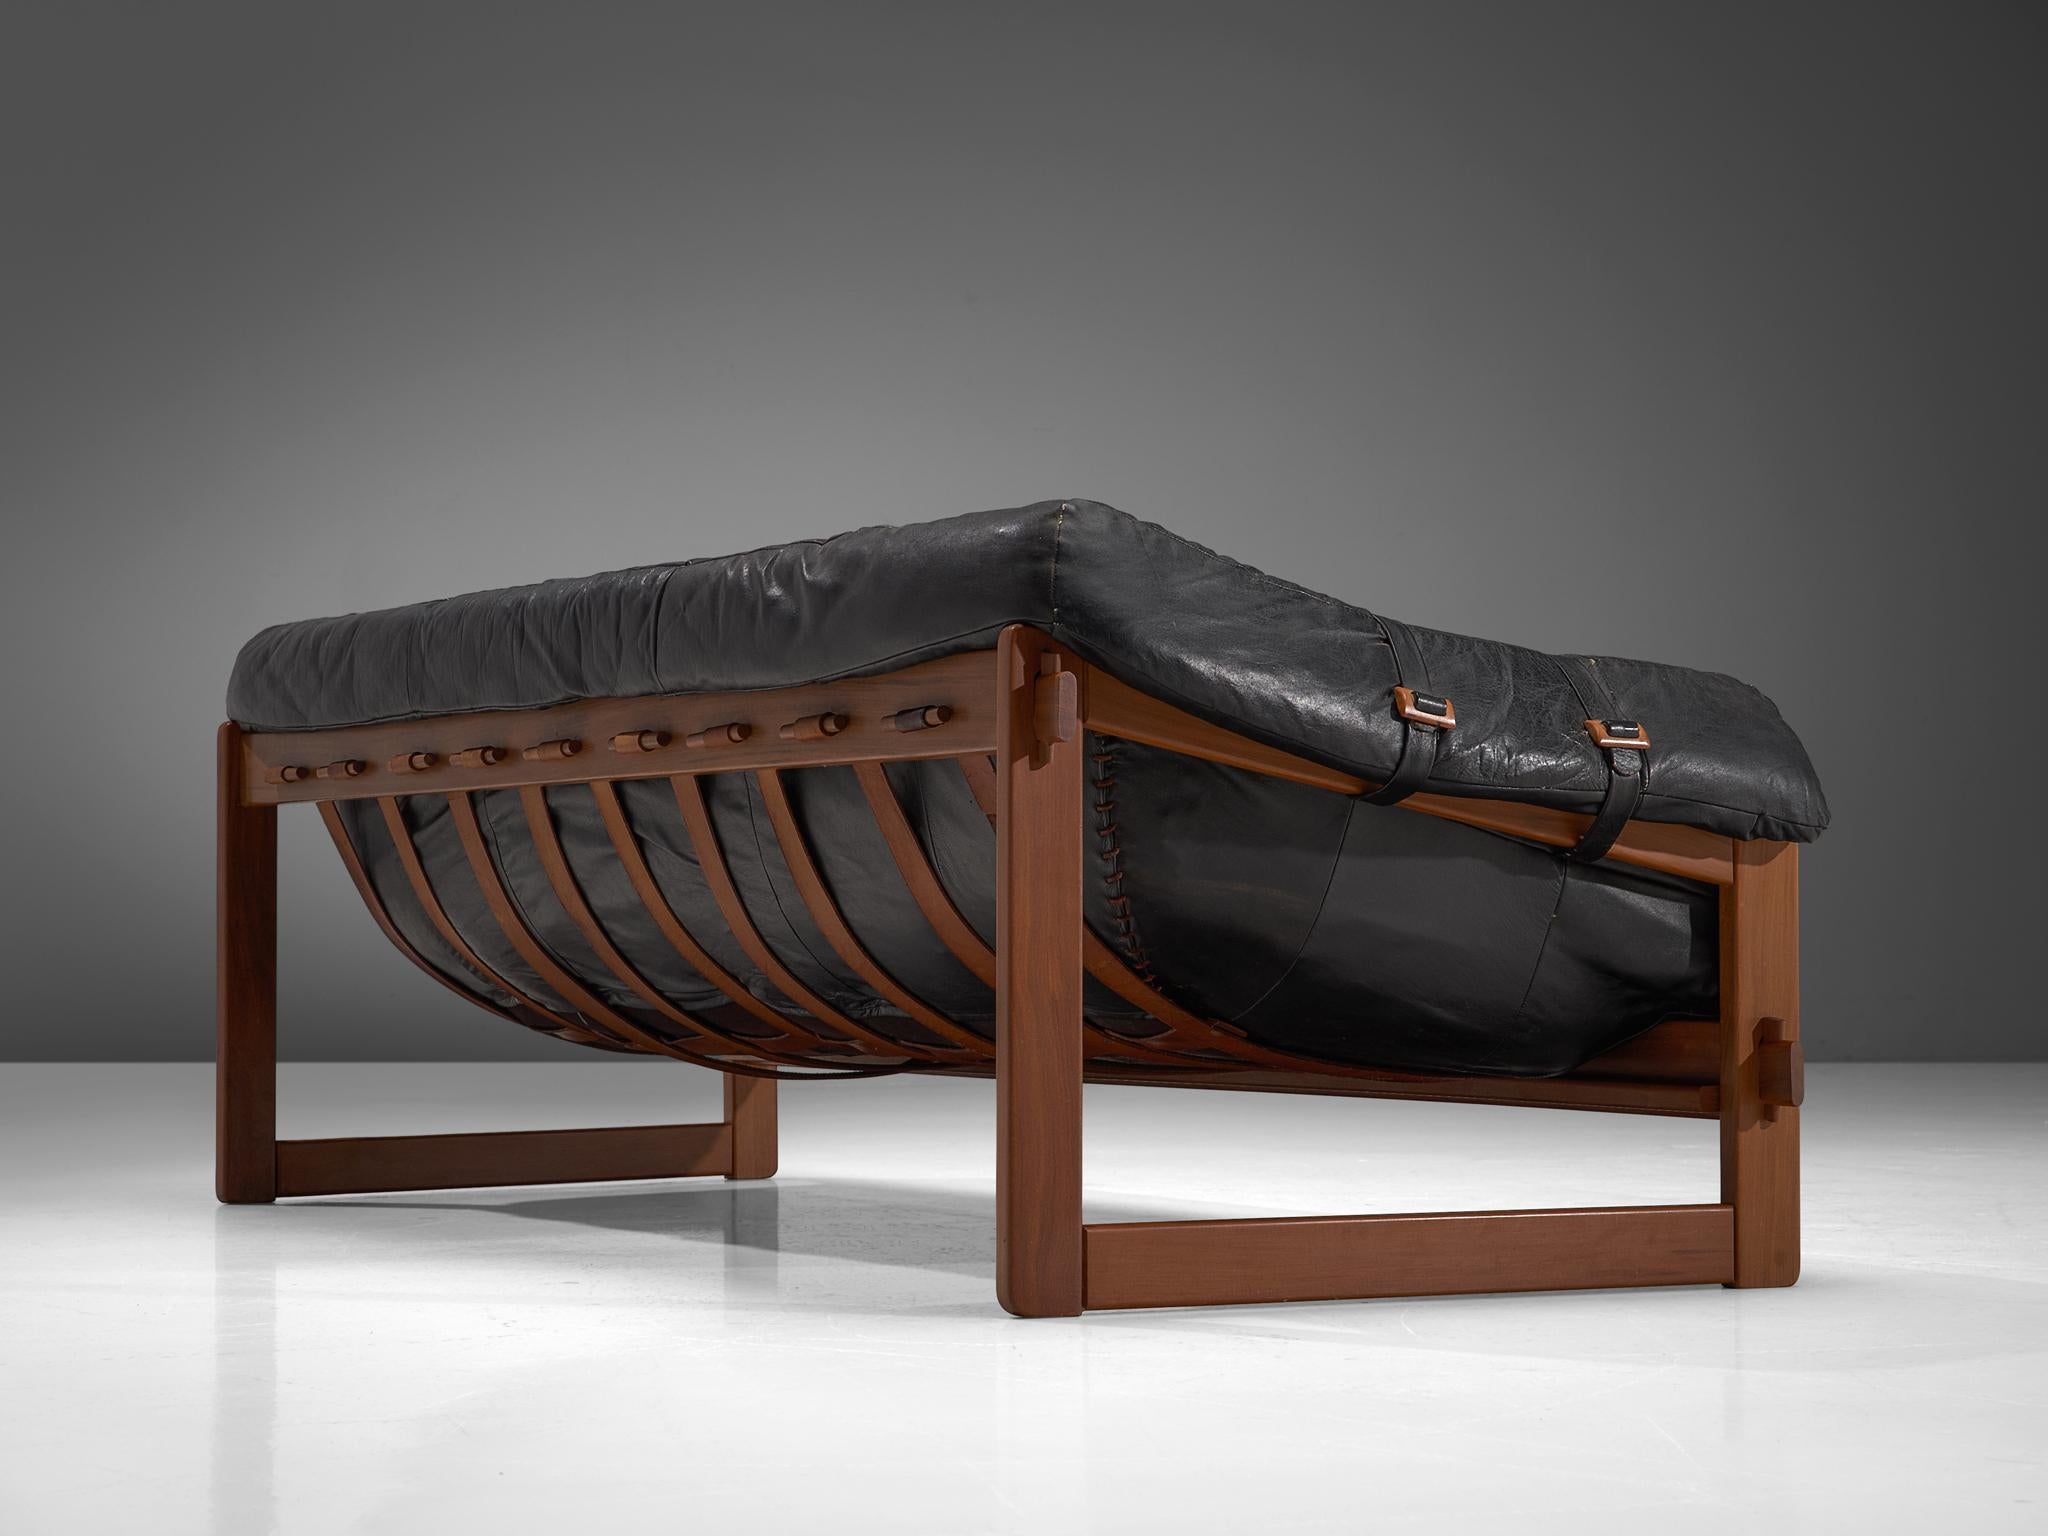 Brazilian Percival Lafer Sofa in Original Black Leather